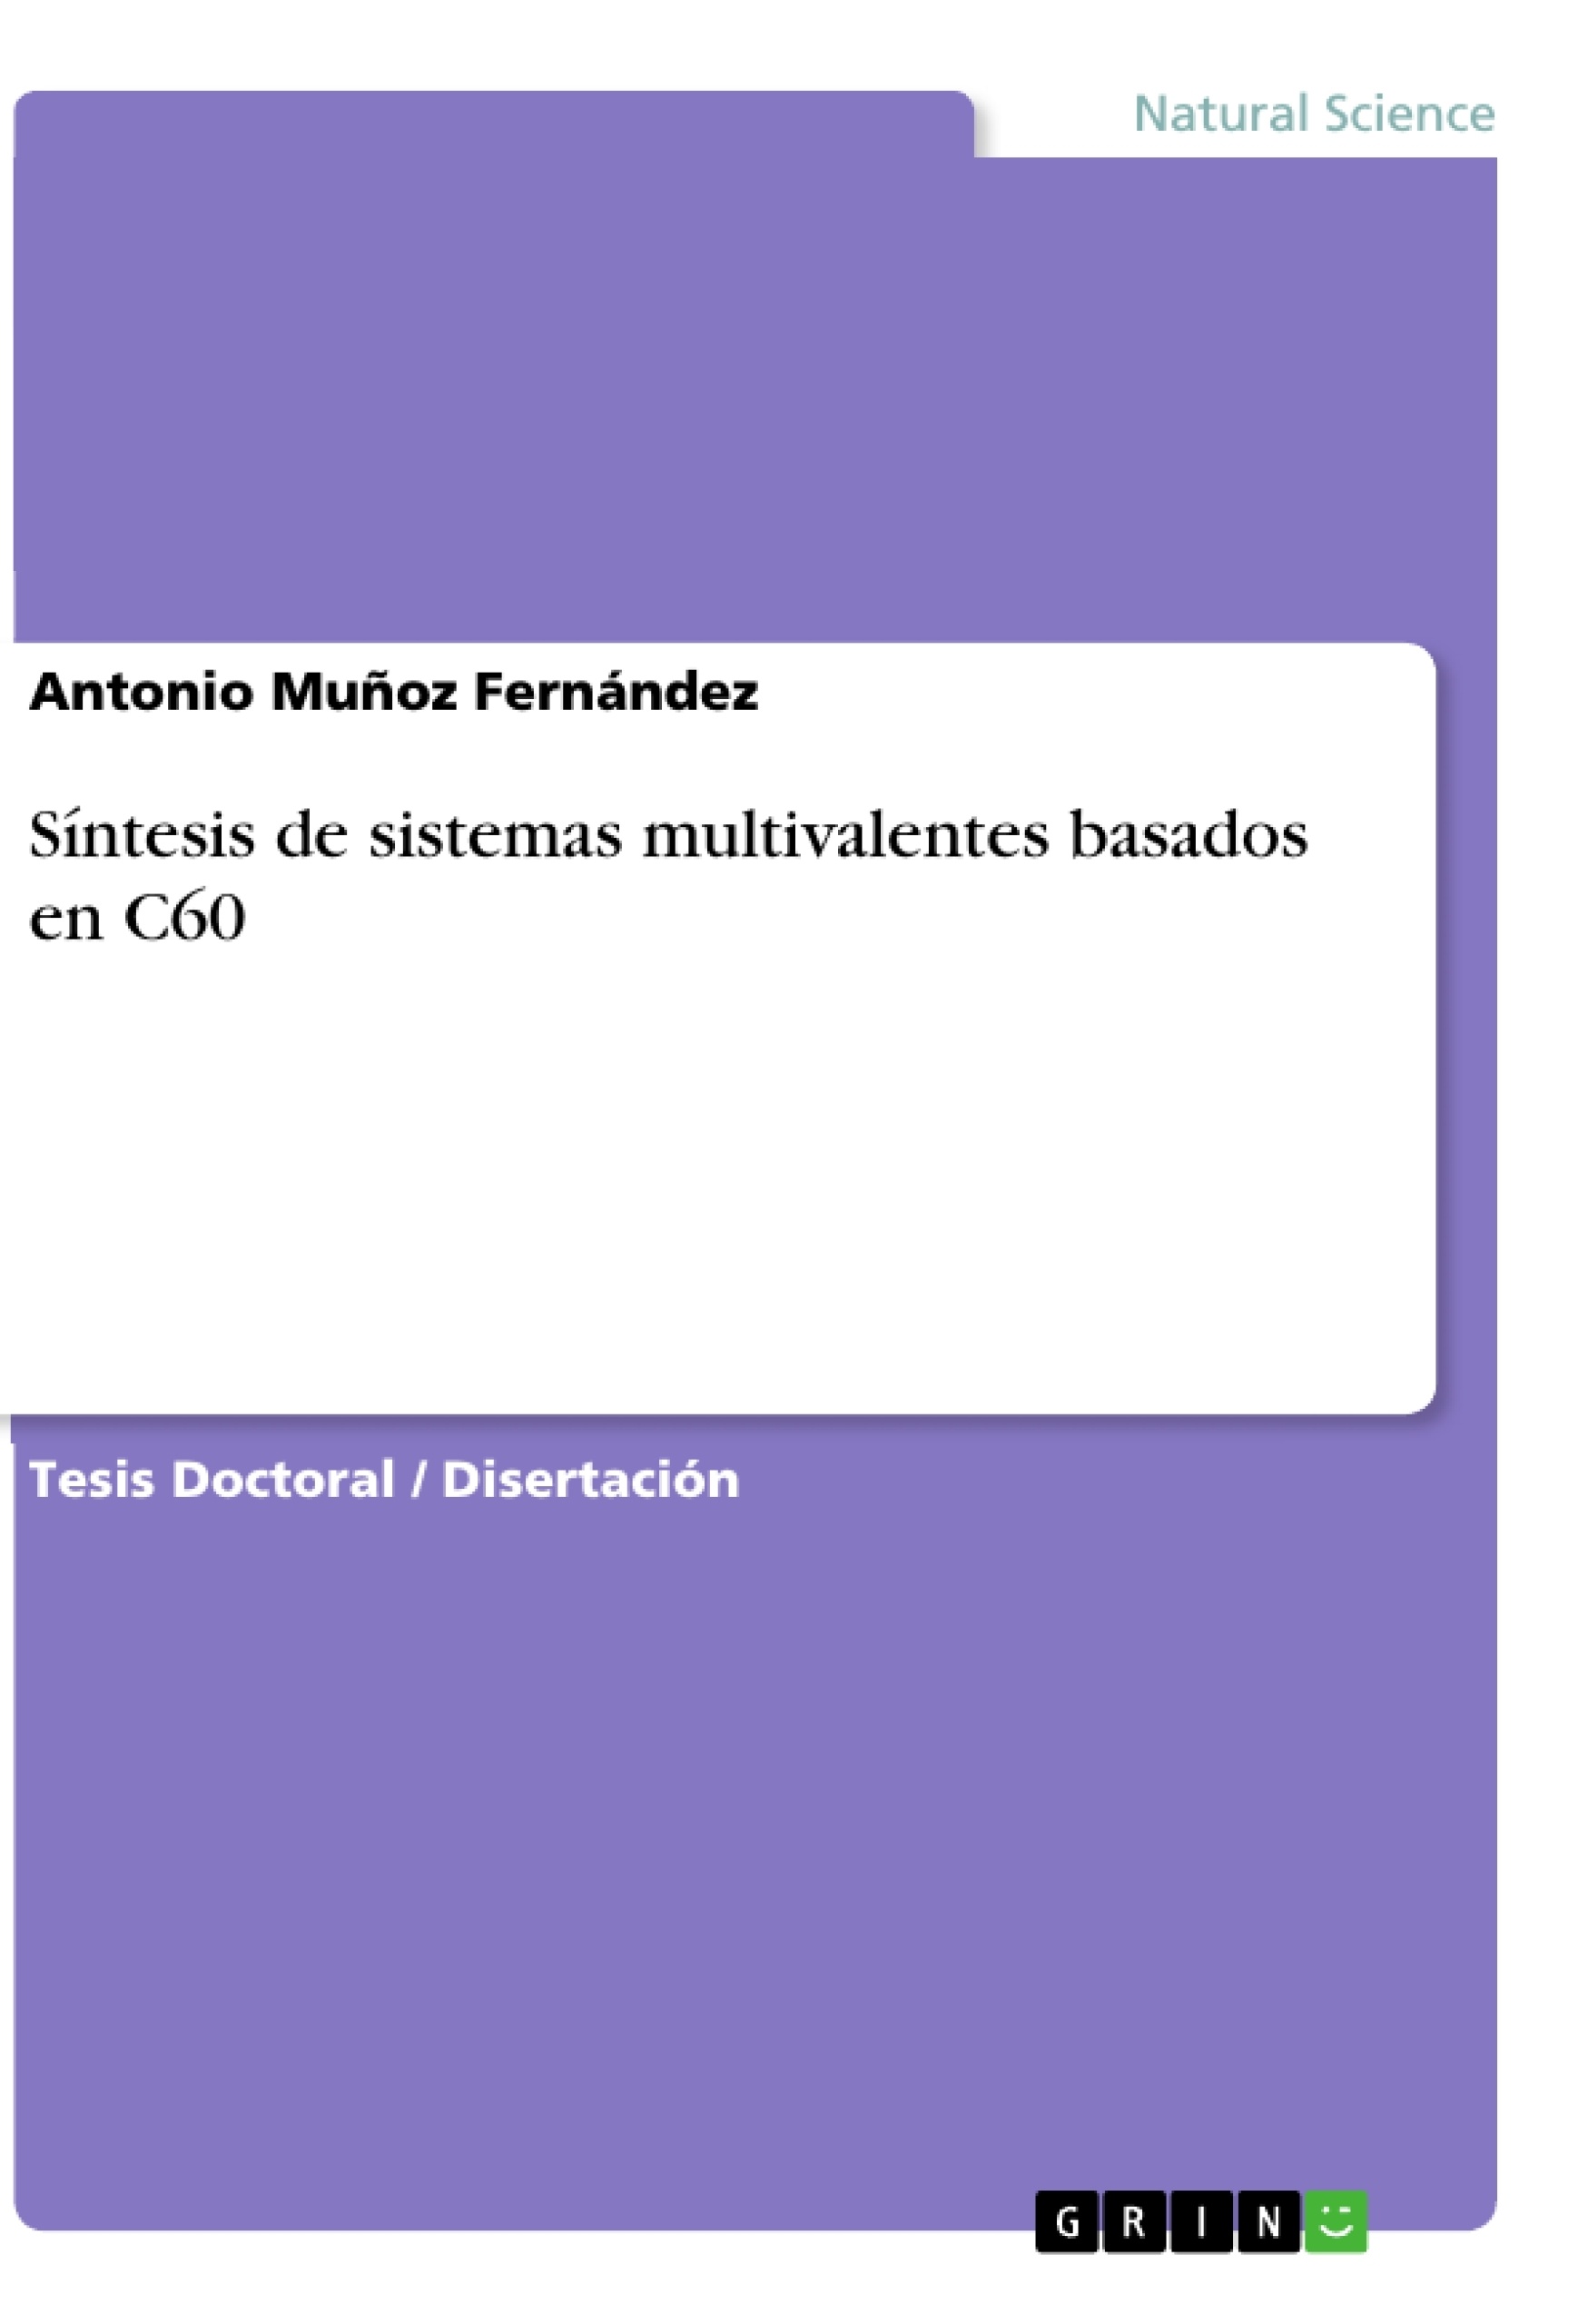 Title: Síntesis de sistemas multivalentes basados en C60